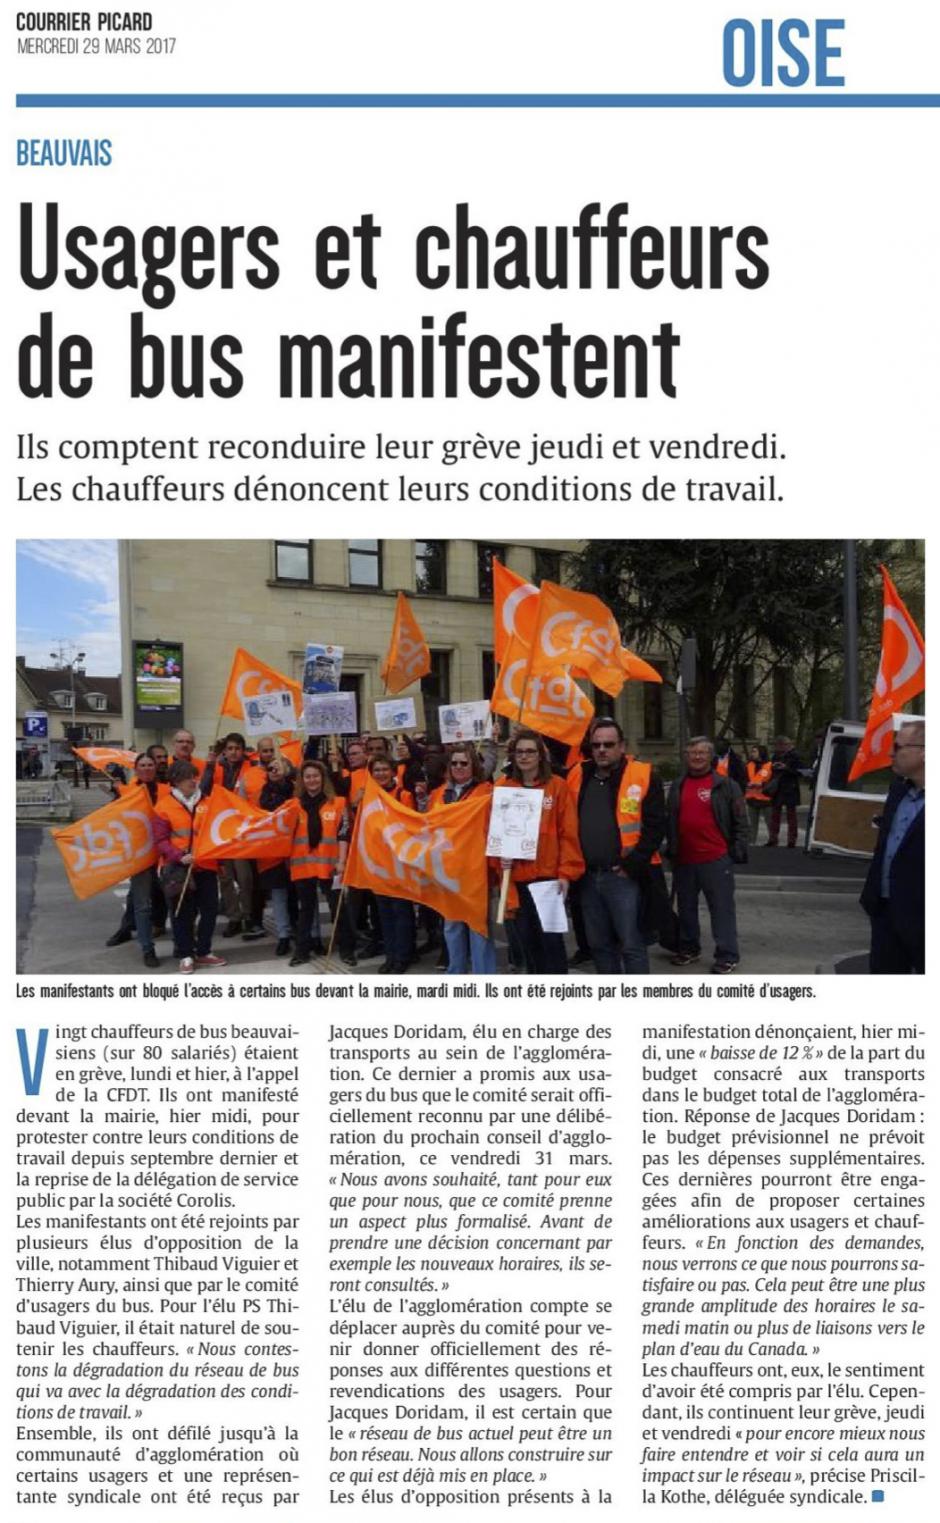 20170329-CP-Beauvais-Usagers et chauffeurs de bus manifestent